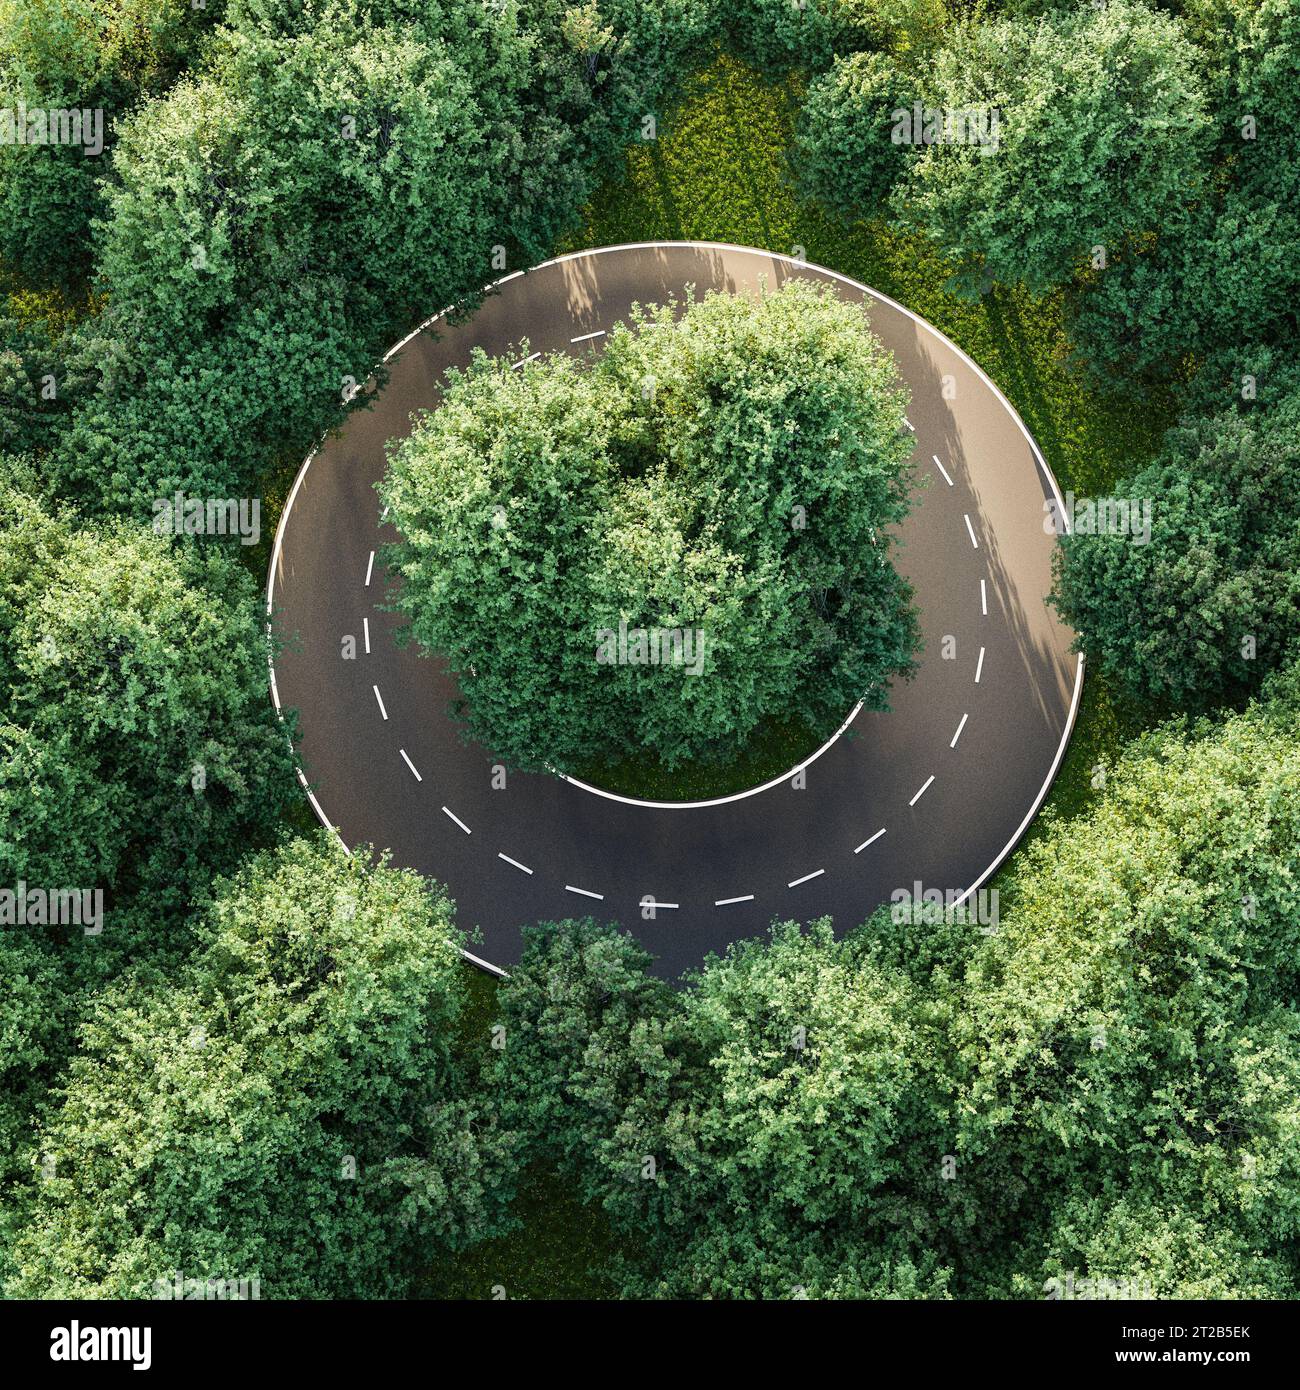 Immagine aerea di una strada circolare all'interno di una foresta di olmi - concetto per nessuna via d'uscita, disperazione, noia, uniformità, conformità. rendering 3d. Foto Stock